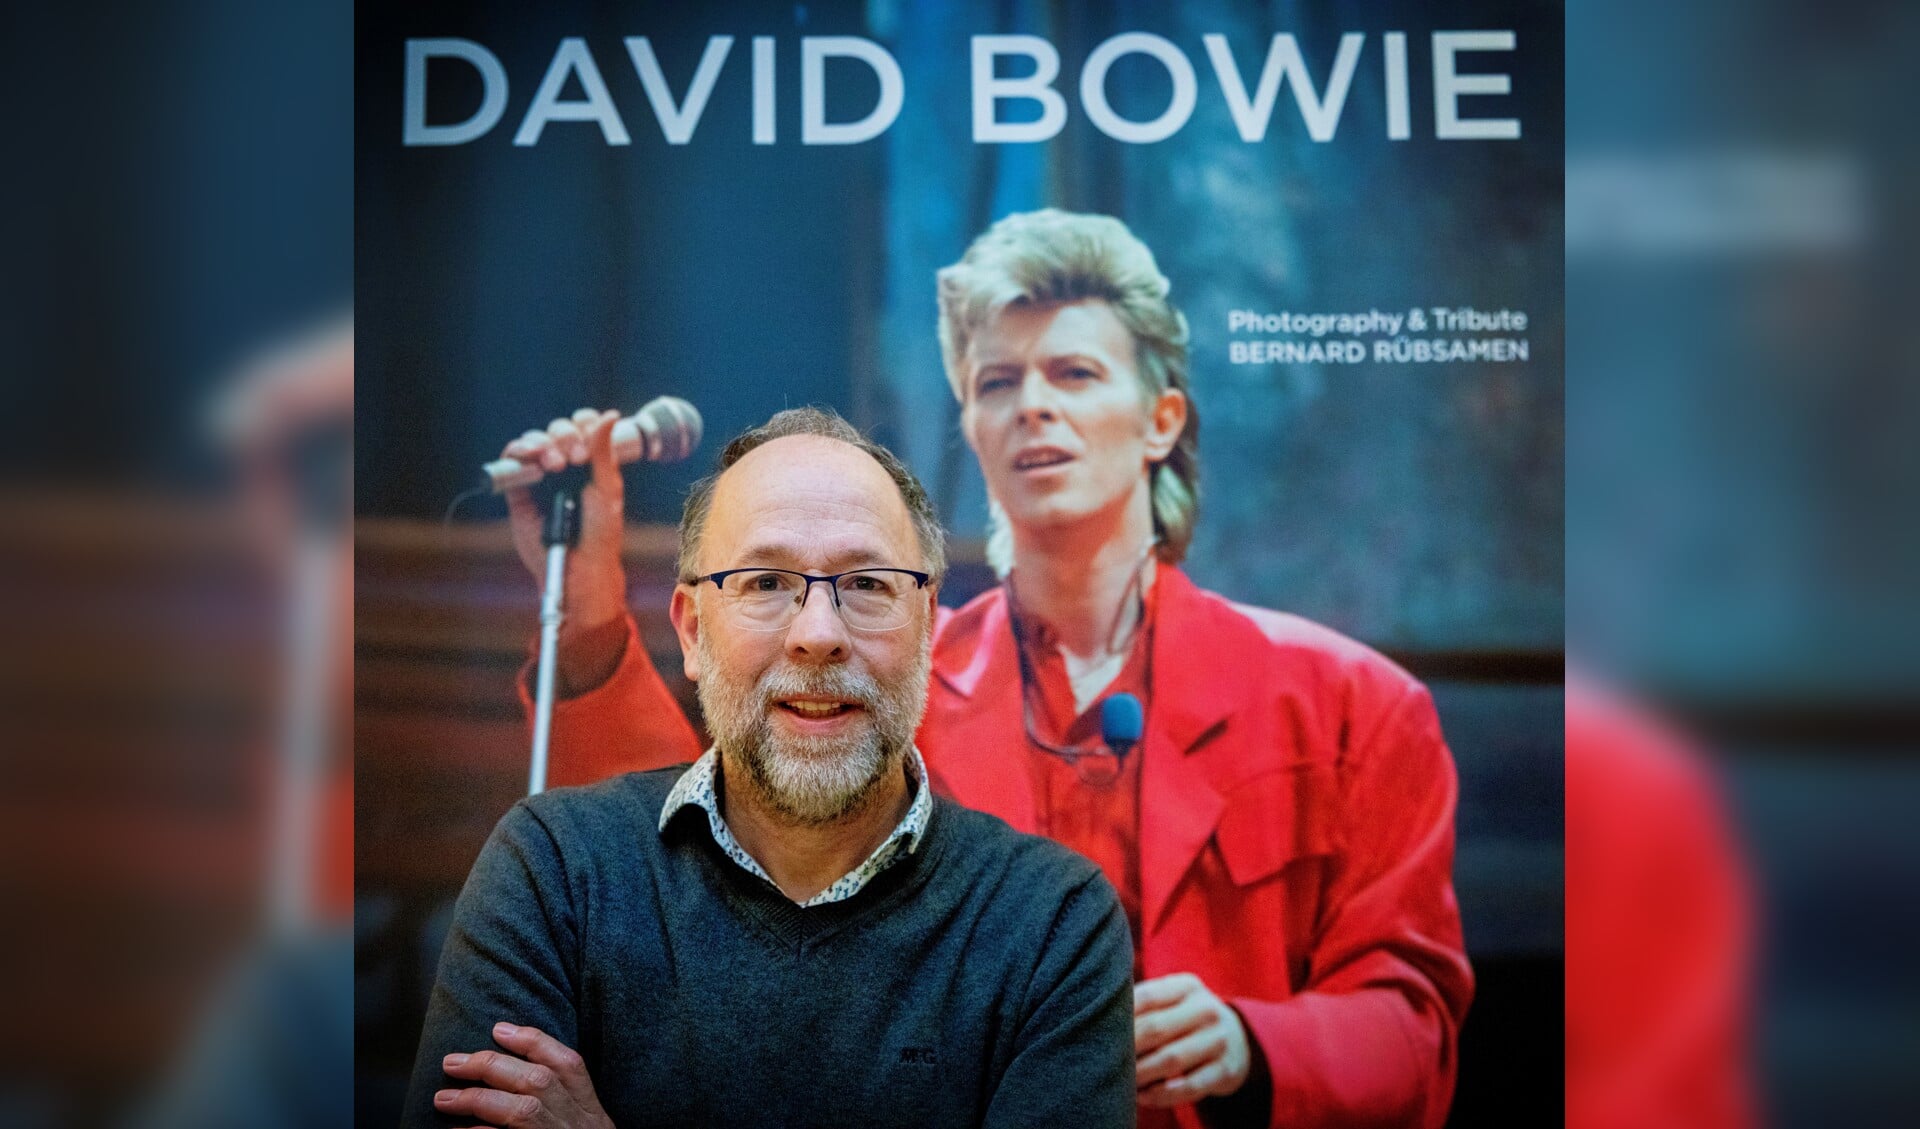 Bernard Rübsamen met op de achtergrond een foto van David Bowie. Foto: Carla Koehorst